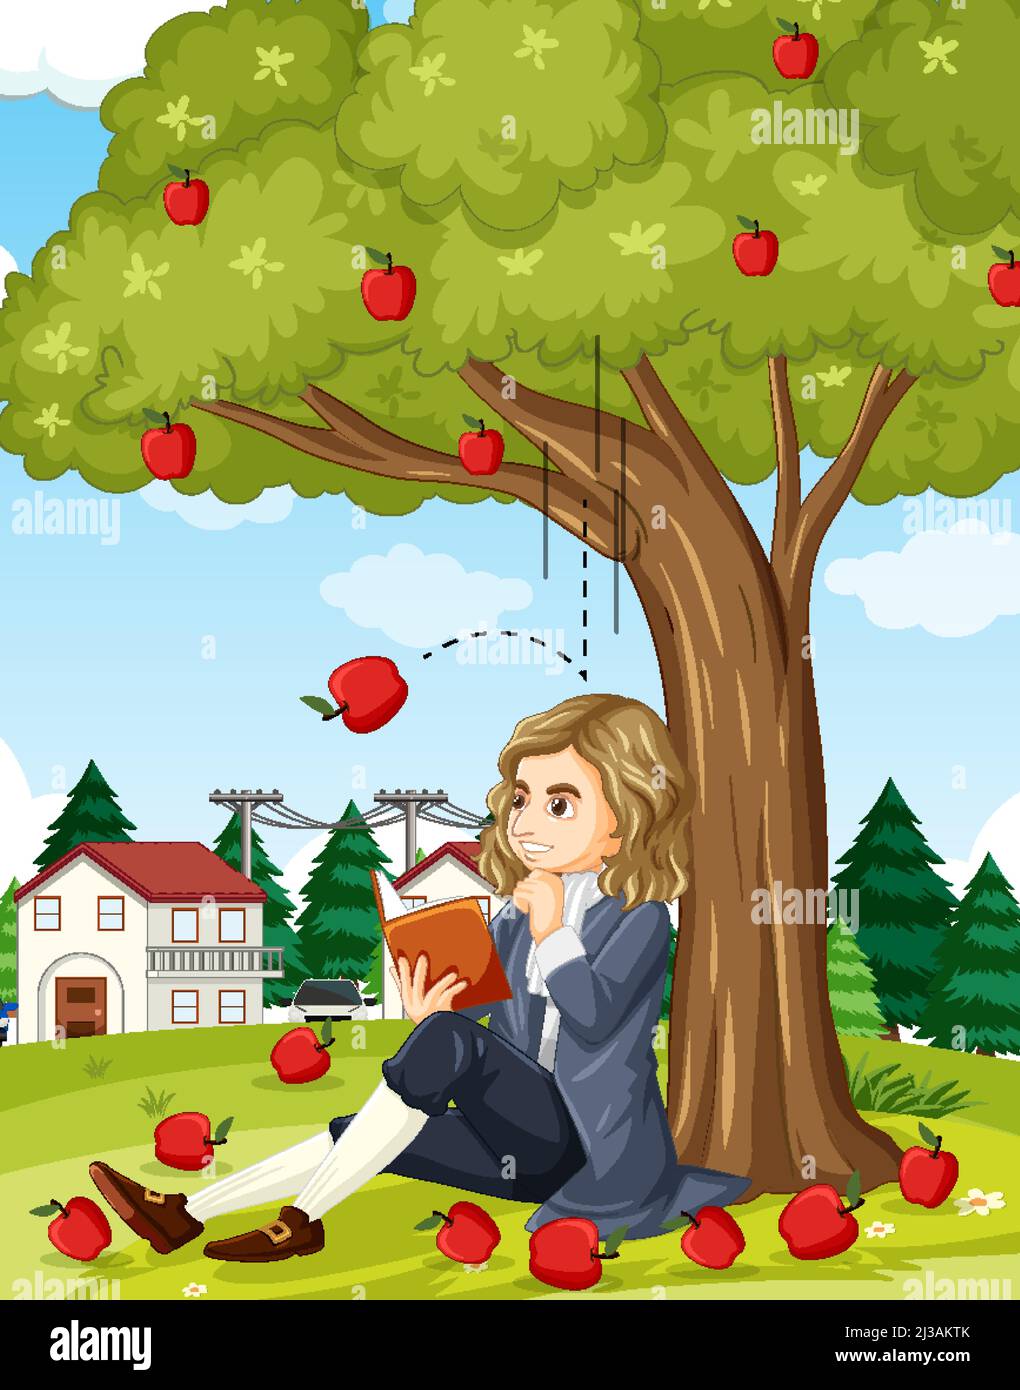 Isaac Newton Gravity Apple